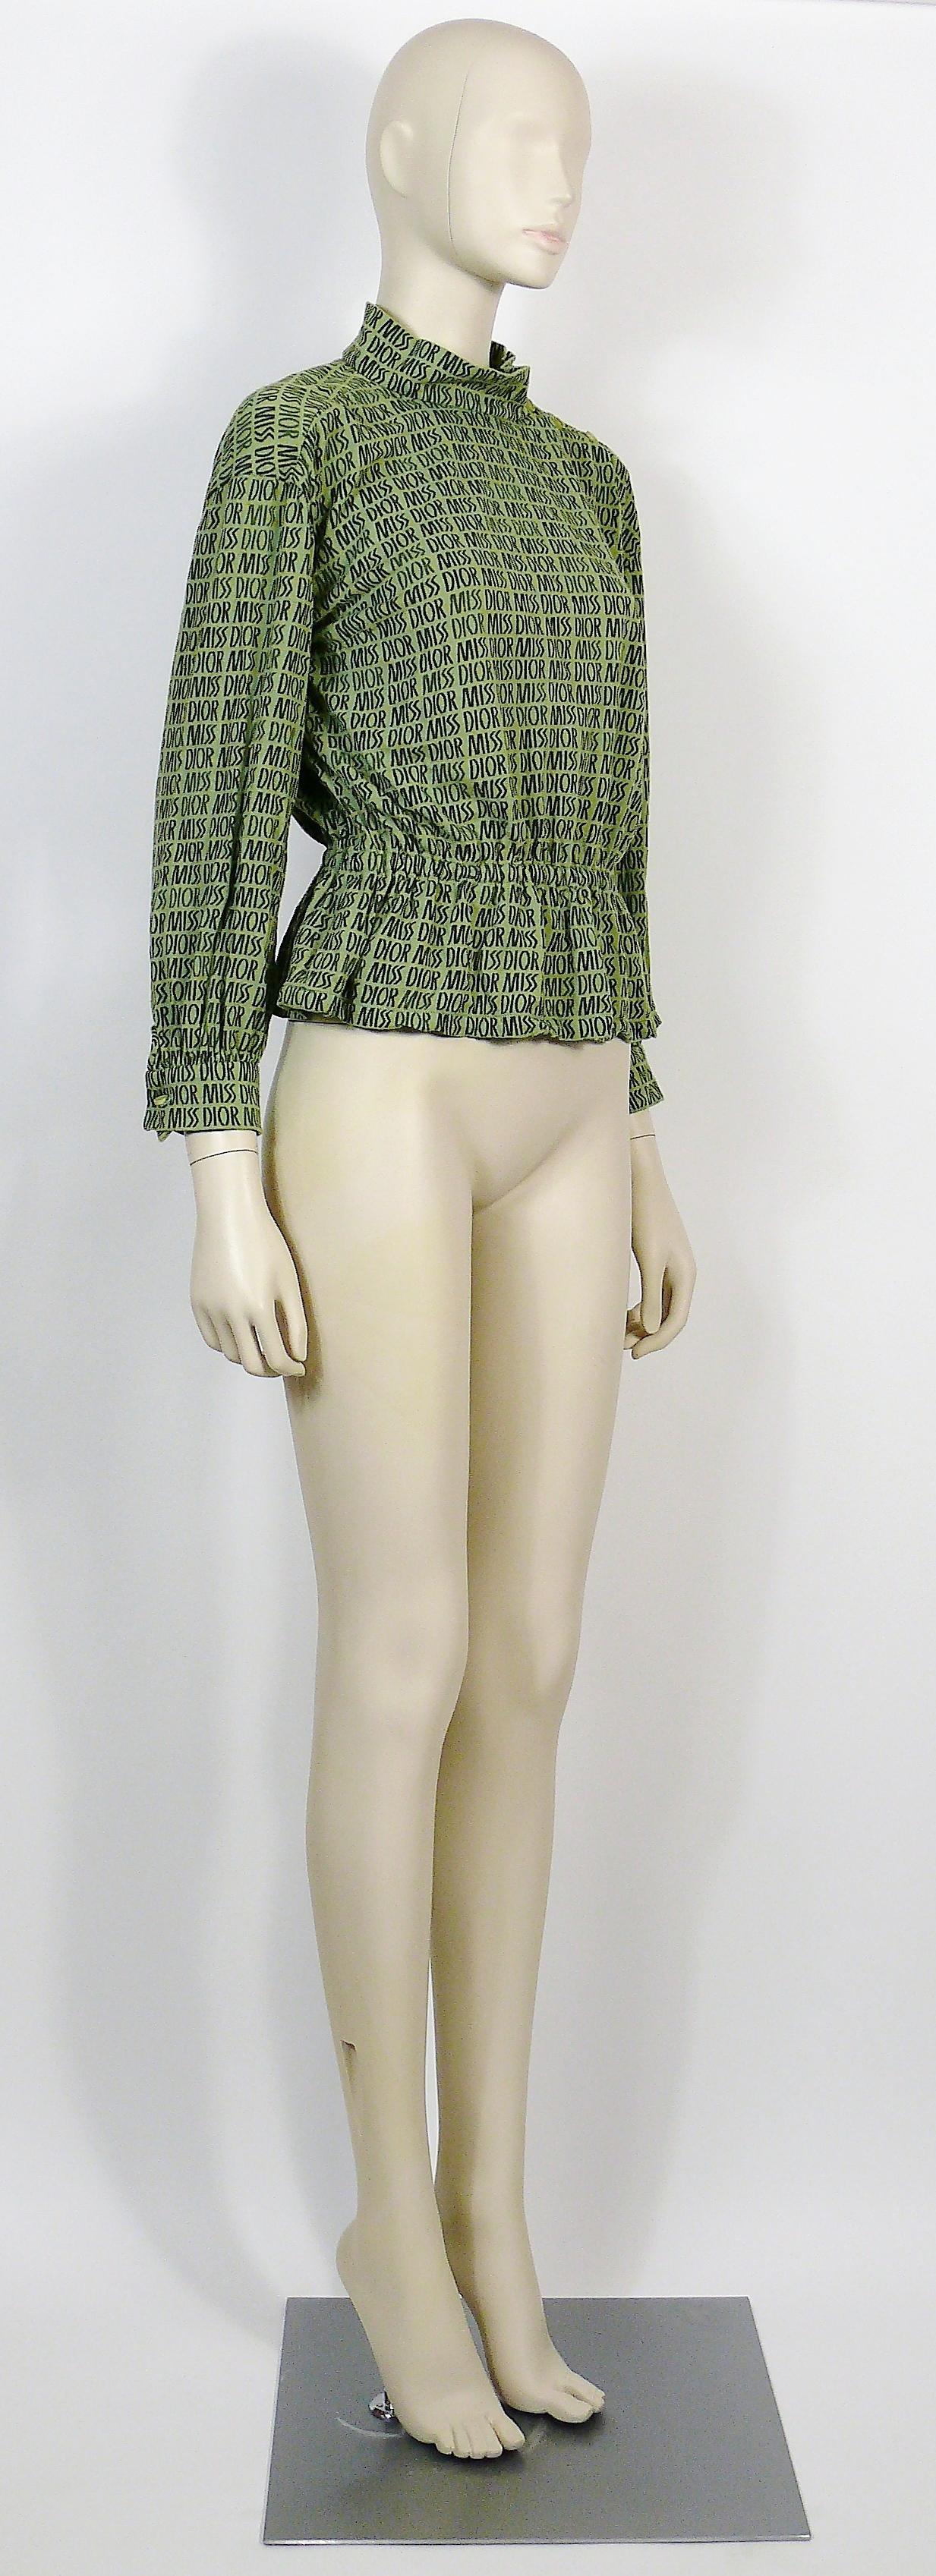 Seltene grüne Vintage-Bluse von MISS DIOR mit MISS DIOR-Logos auf dem ganzen Körper.

Diese Bluse hat folgende Eigenschaften:
- Dehnbarer Stoff (Zusammensetzung nicht bekannt).
- Rundhalsausschnitt mit seitlicher Knopfleiste.
- Knopfverschluss an